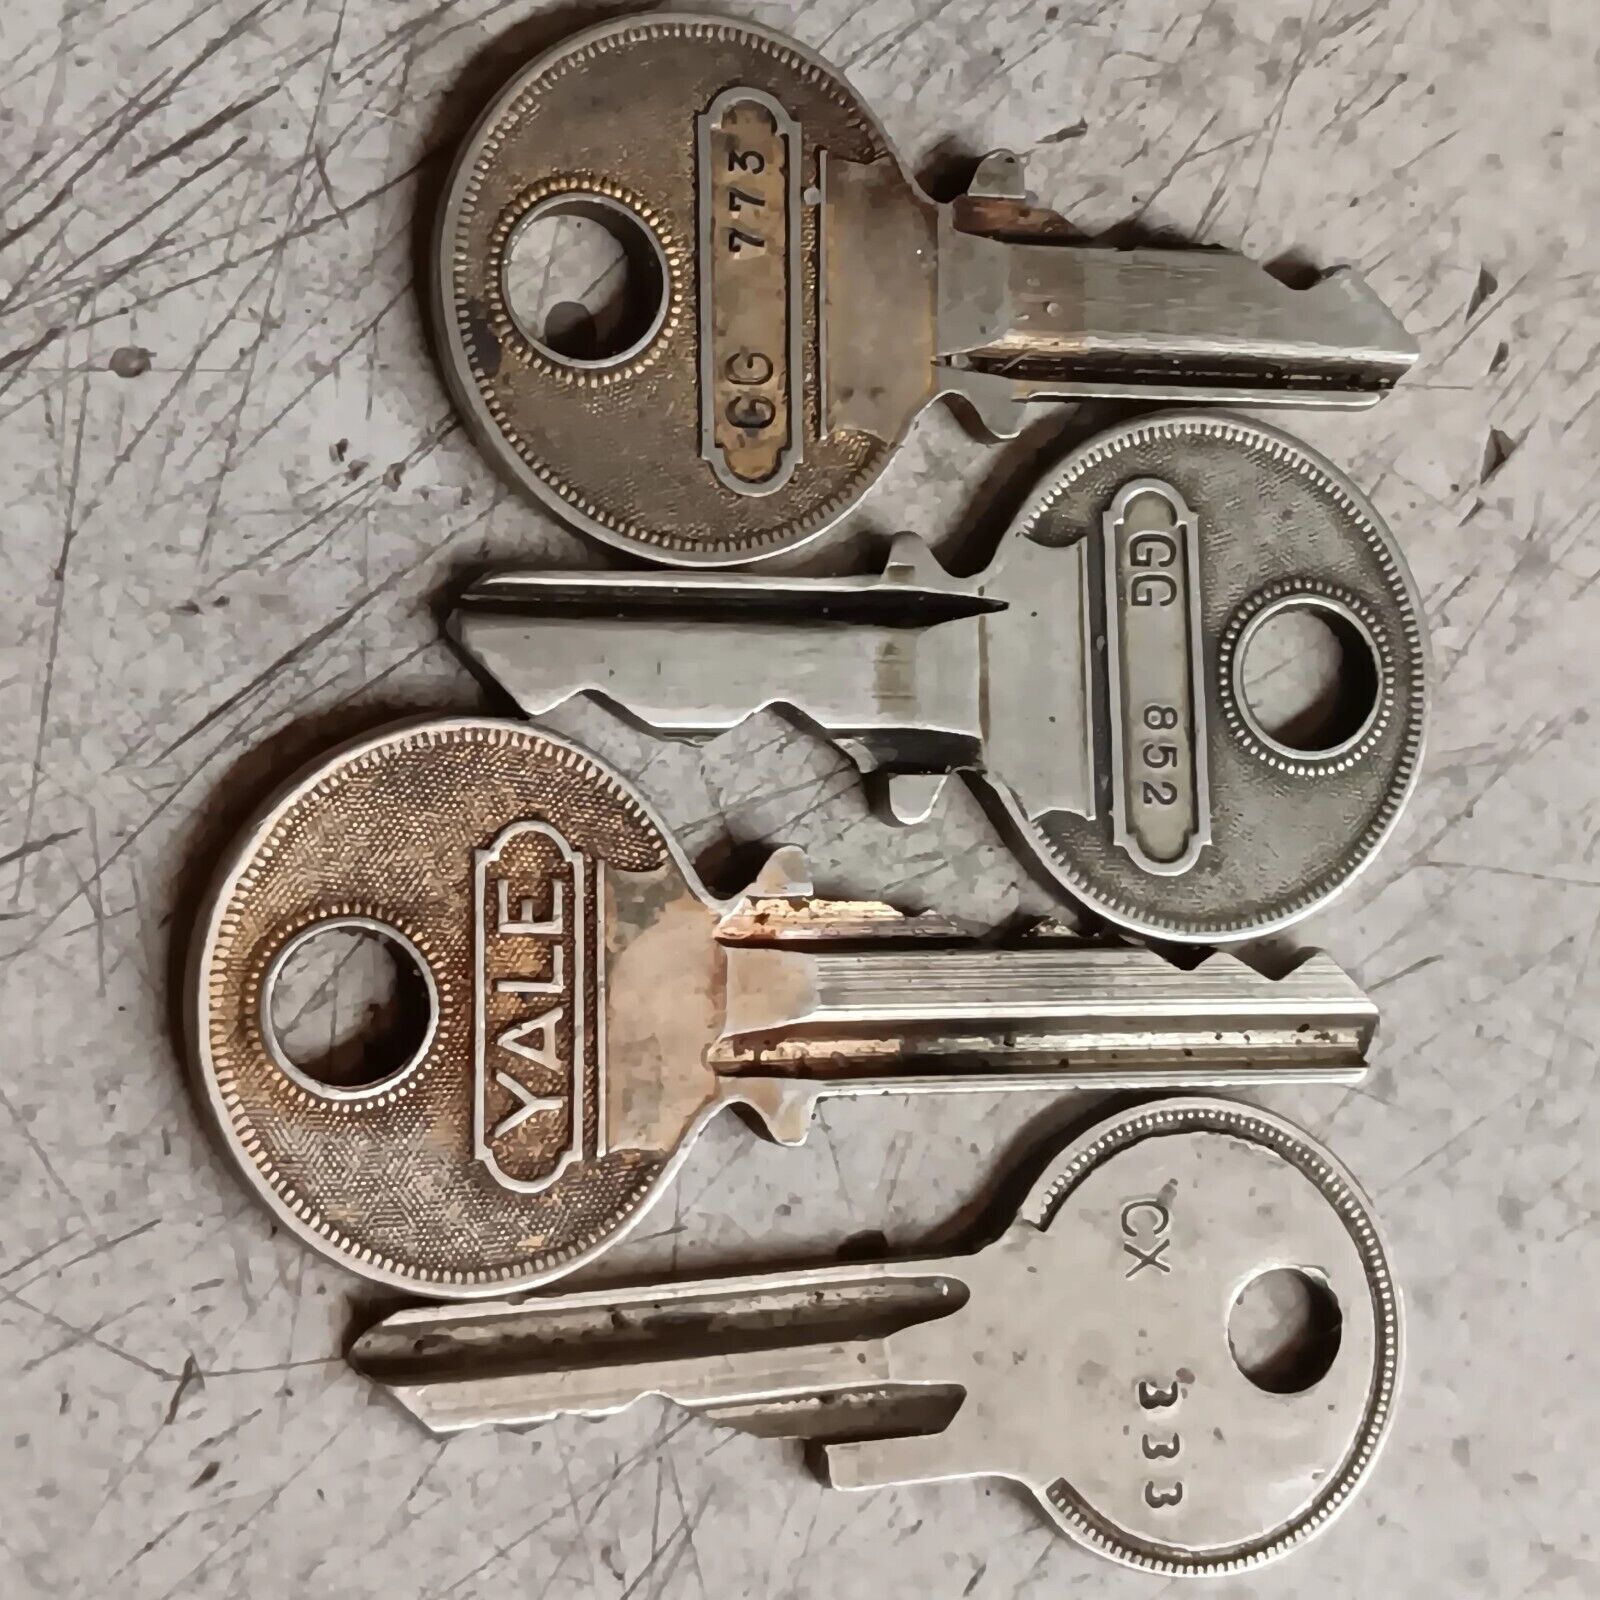 4 Vintage Yale Security Keys..